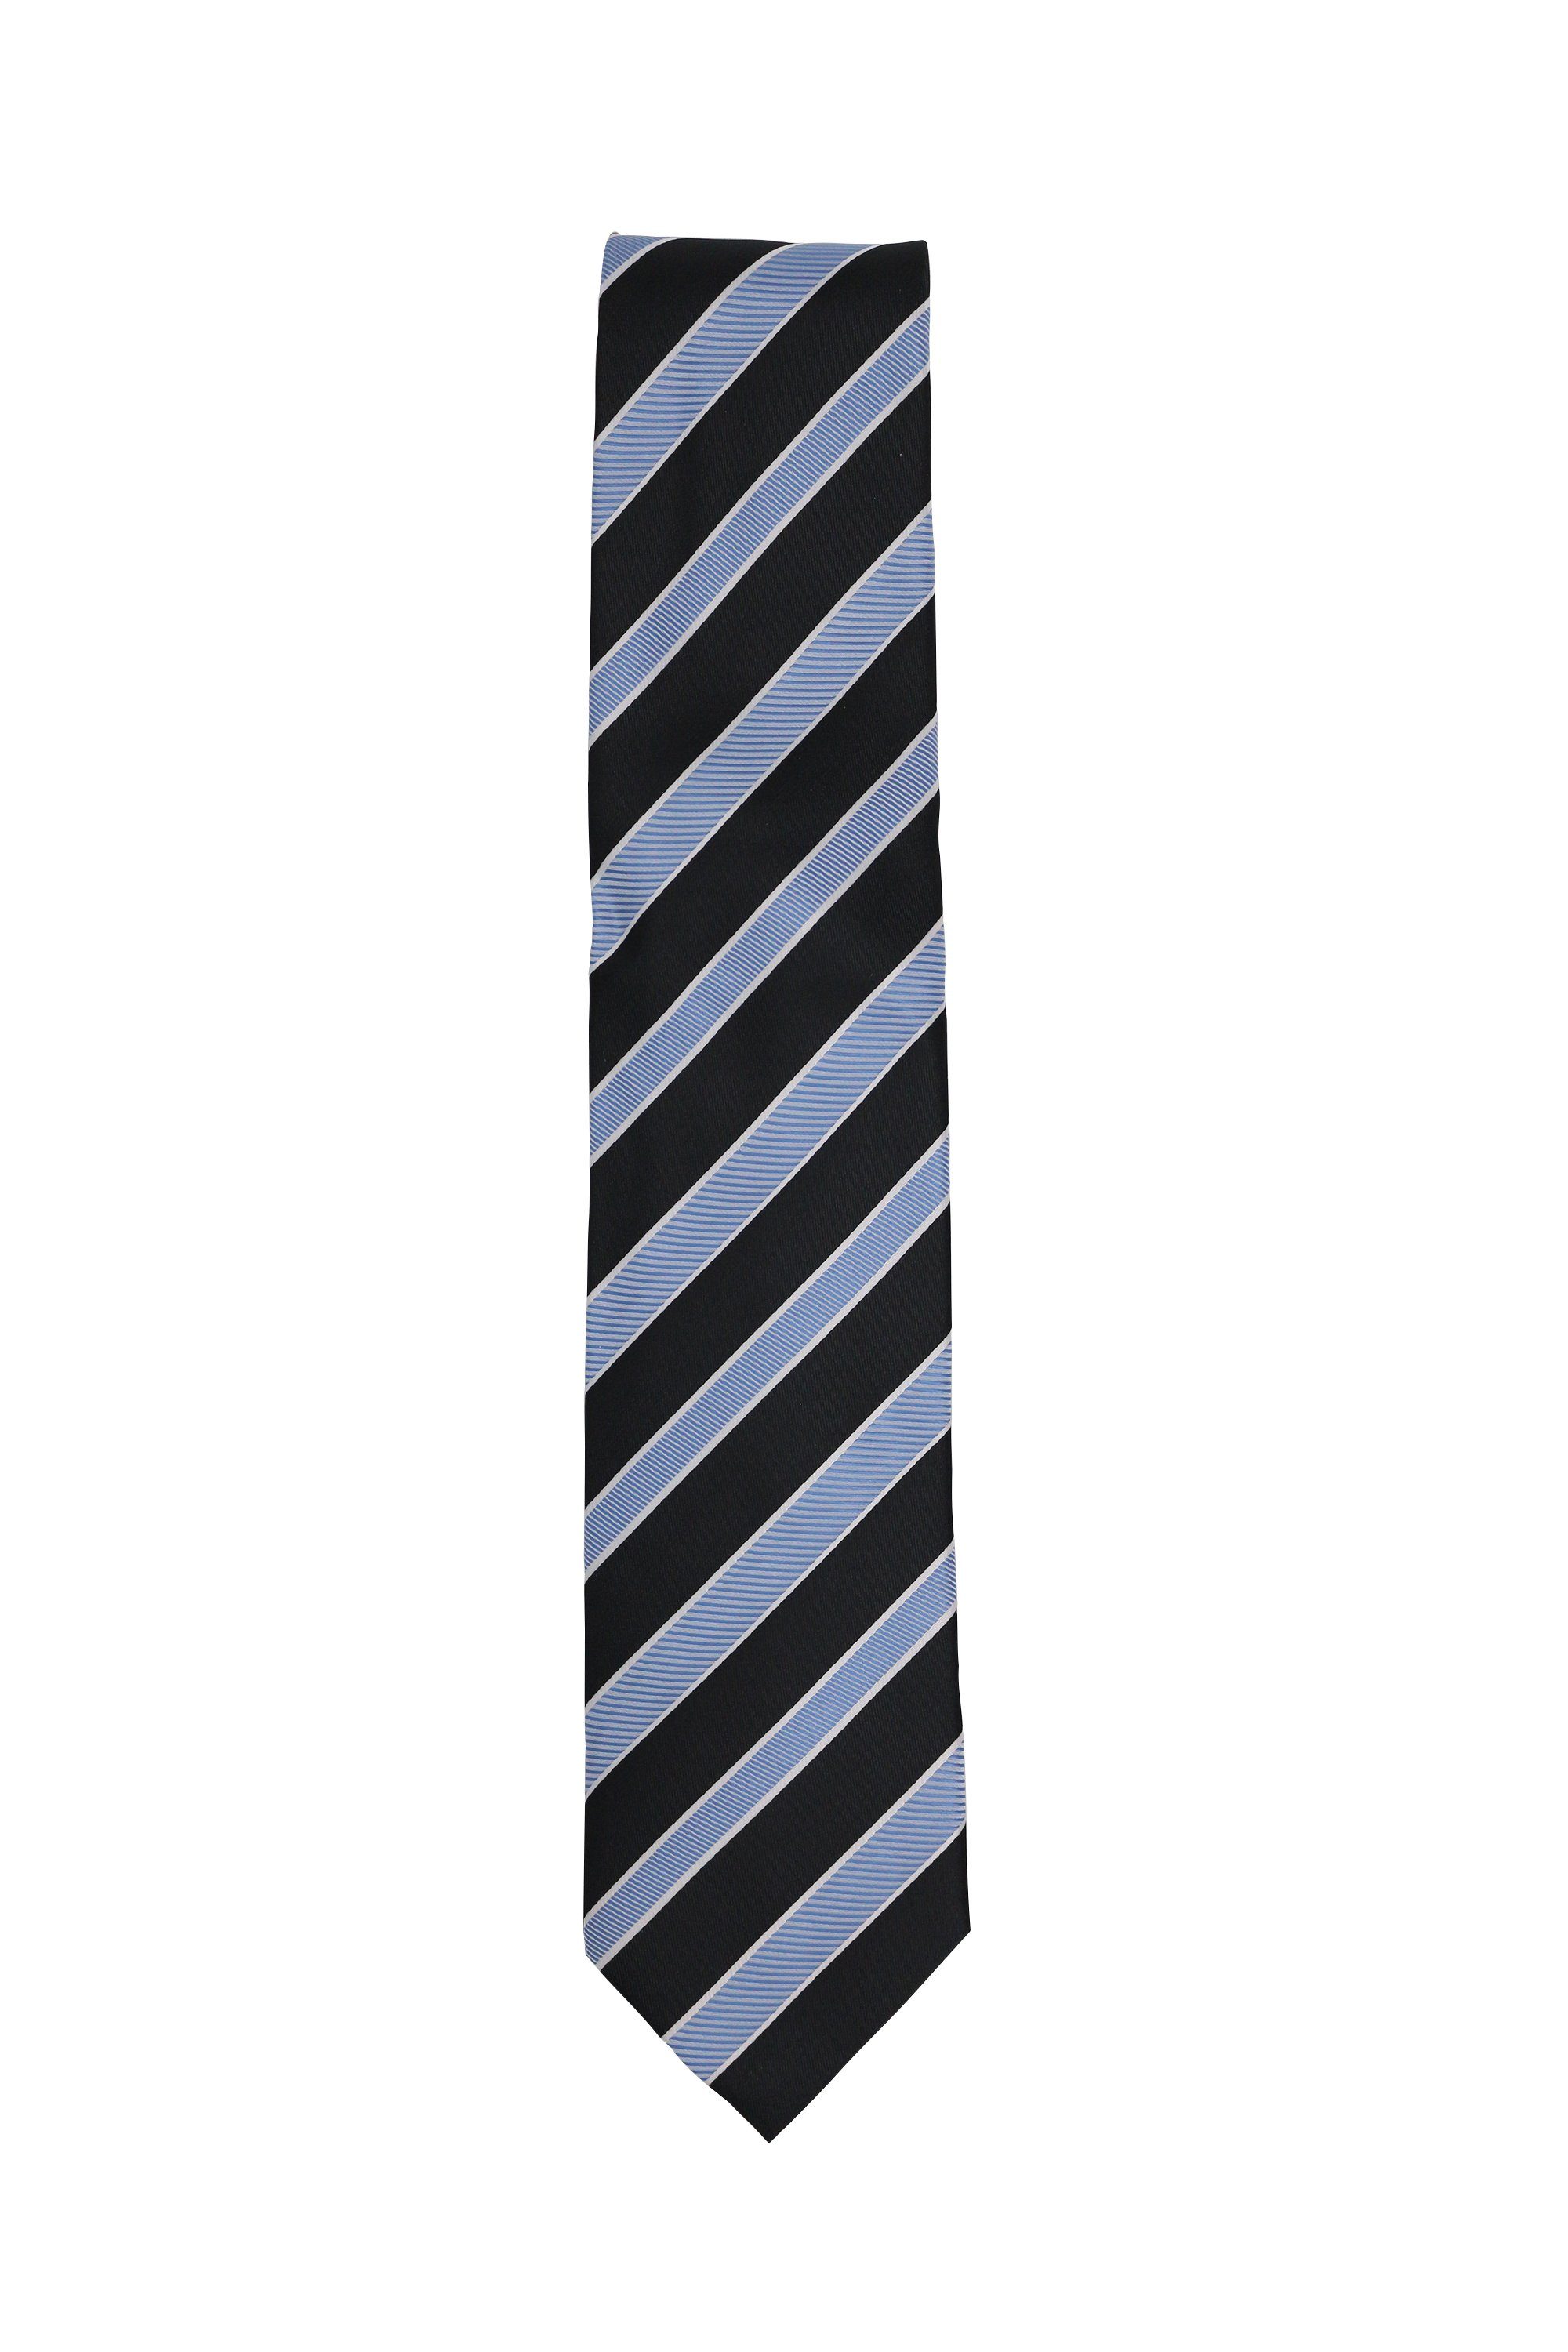 Fabio Platinum Schlips Blaue Farini (ohne Krawatte Herren (8cm), 8cm - verschiedene Krawatte in Schwarz Männer Box, Breit Blautöne - Gray/Cool Blue/Ice Gestreift) Blue Blau